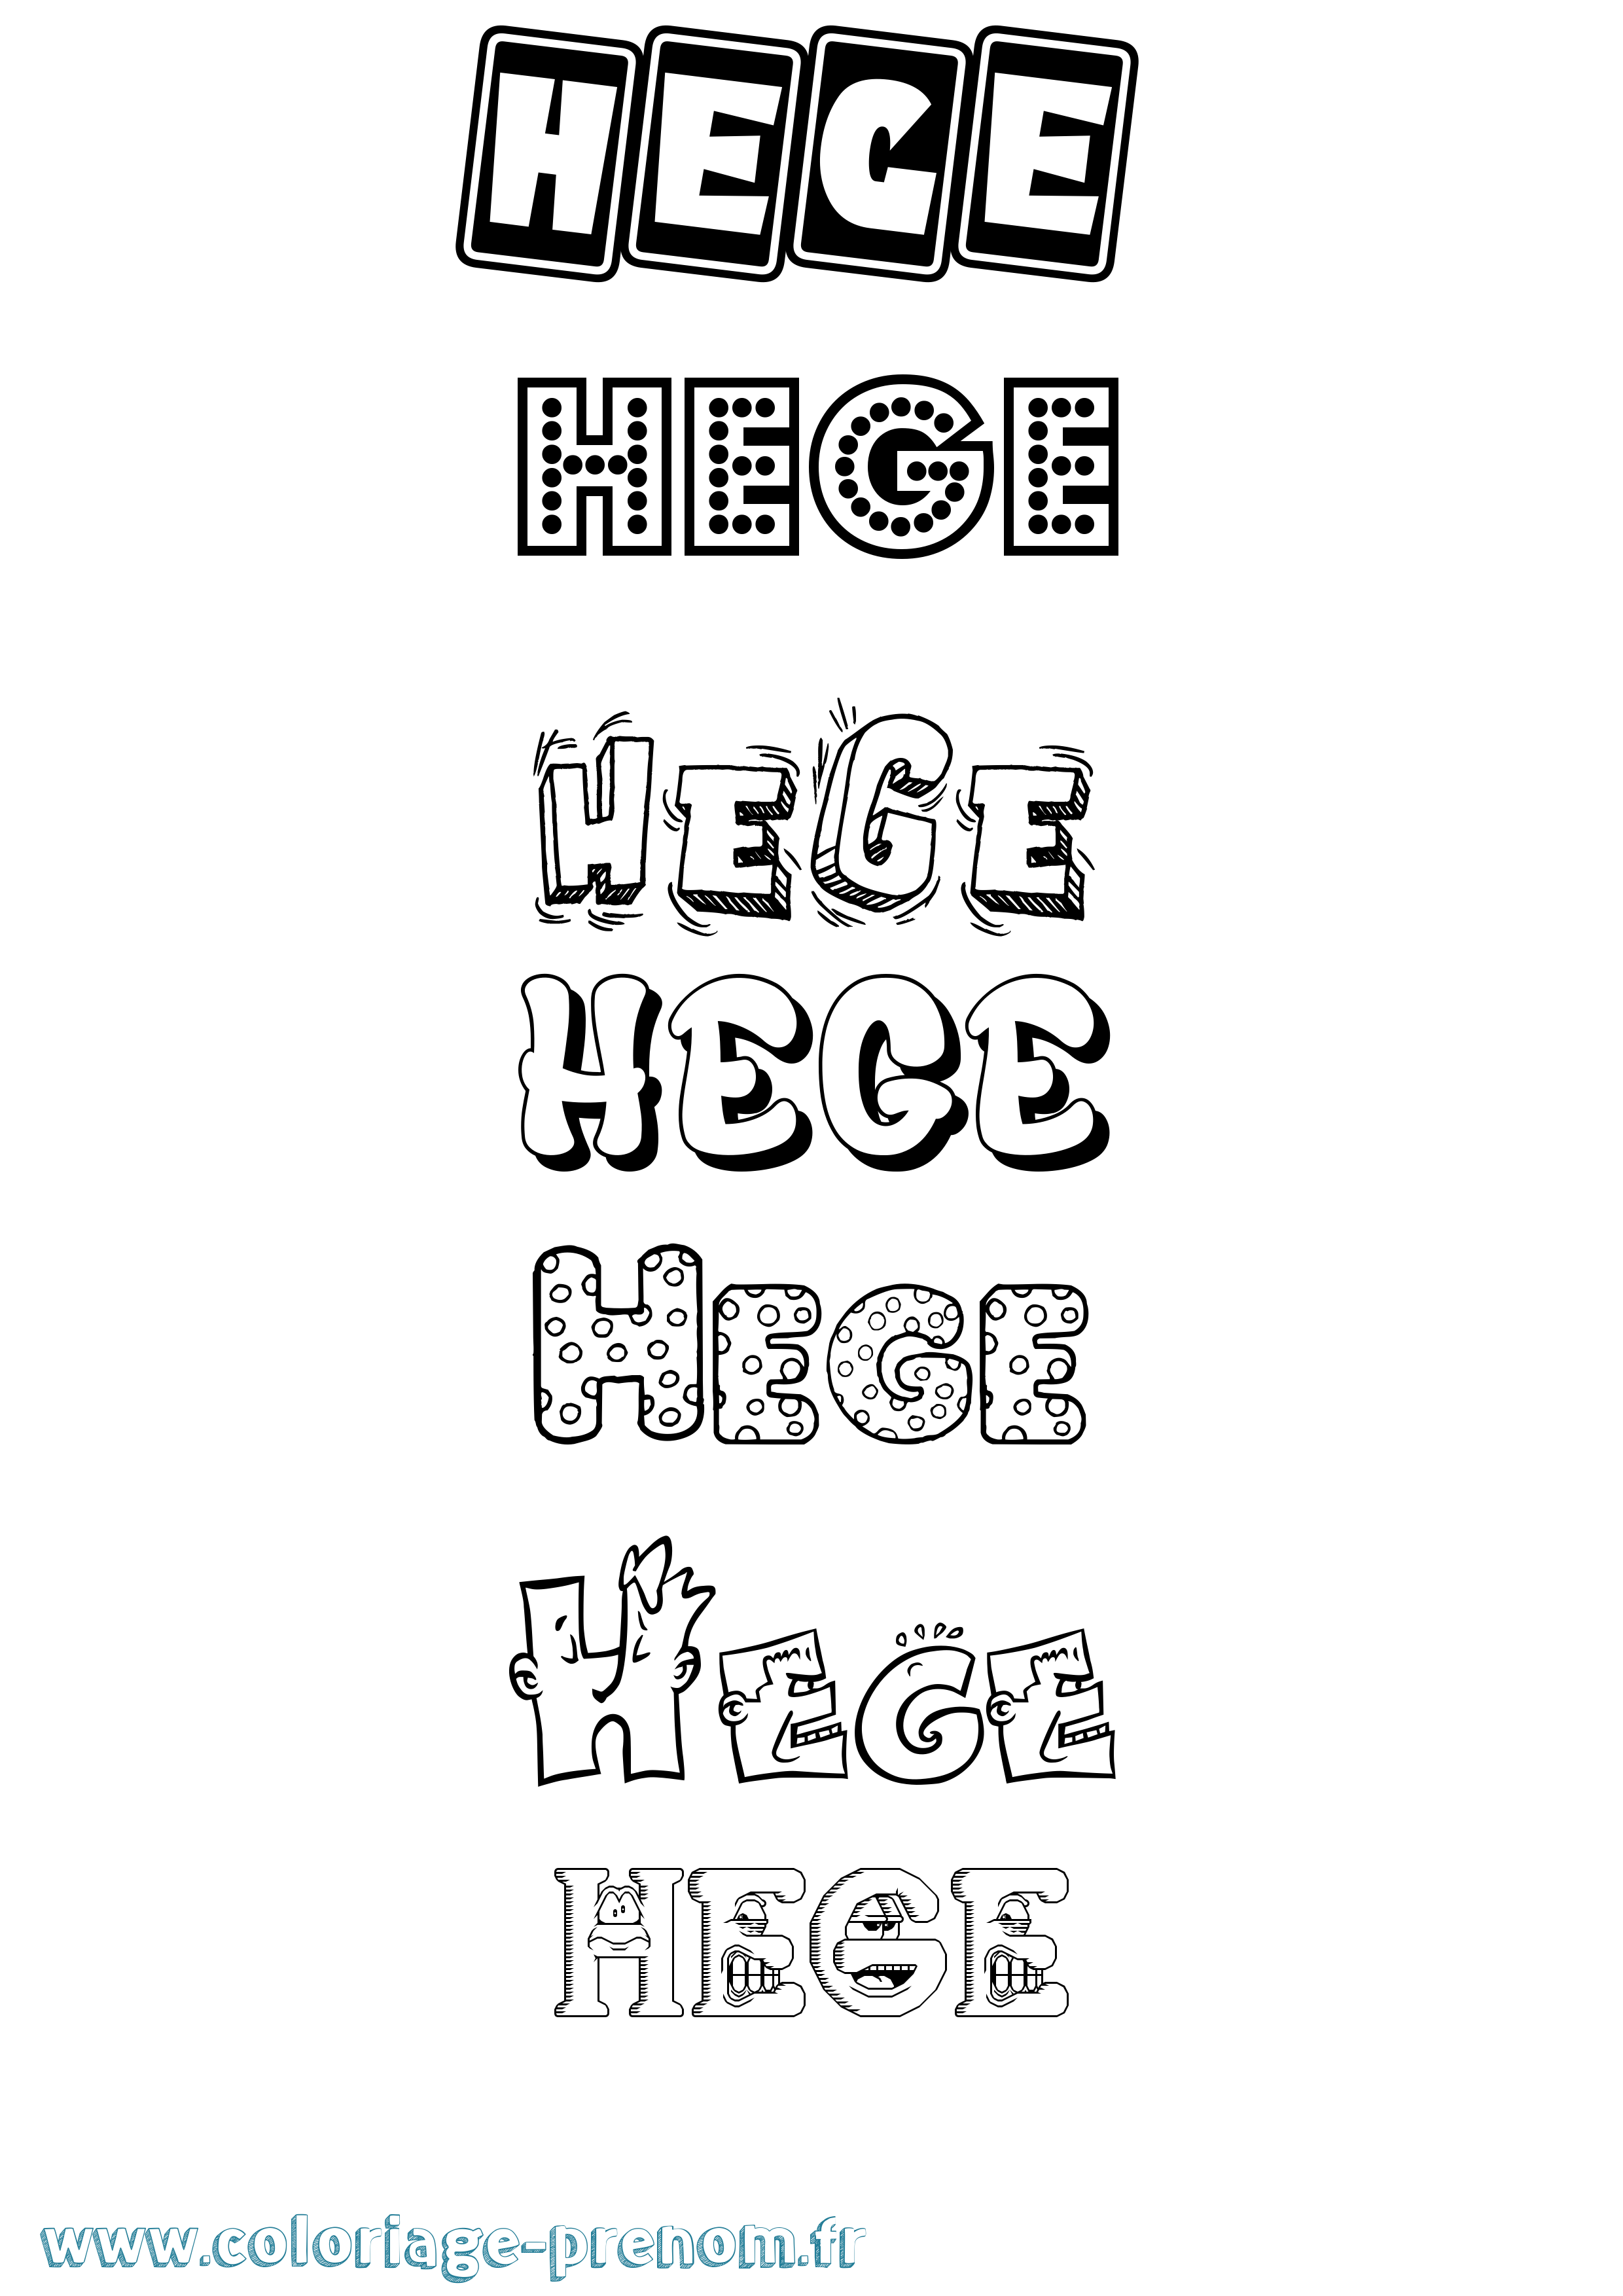 Coloriage prénom Hege Fun